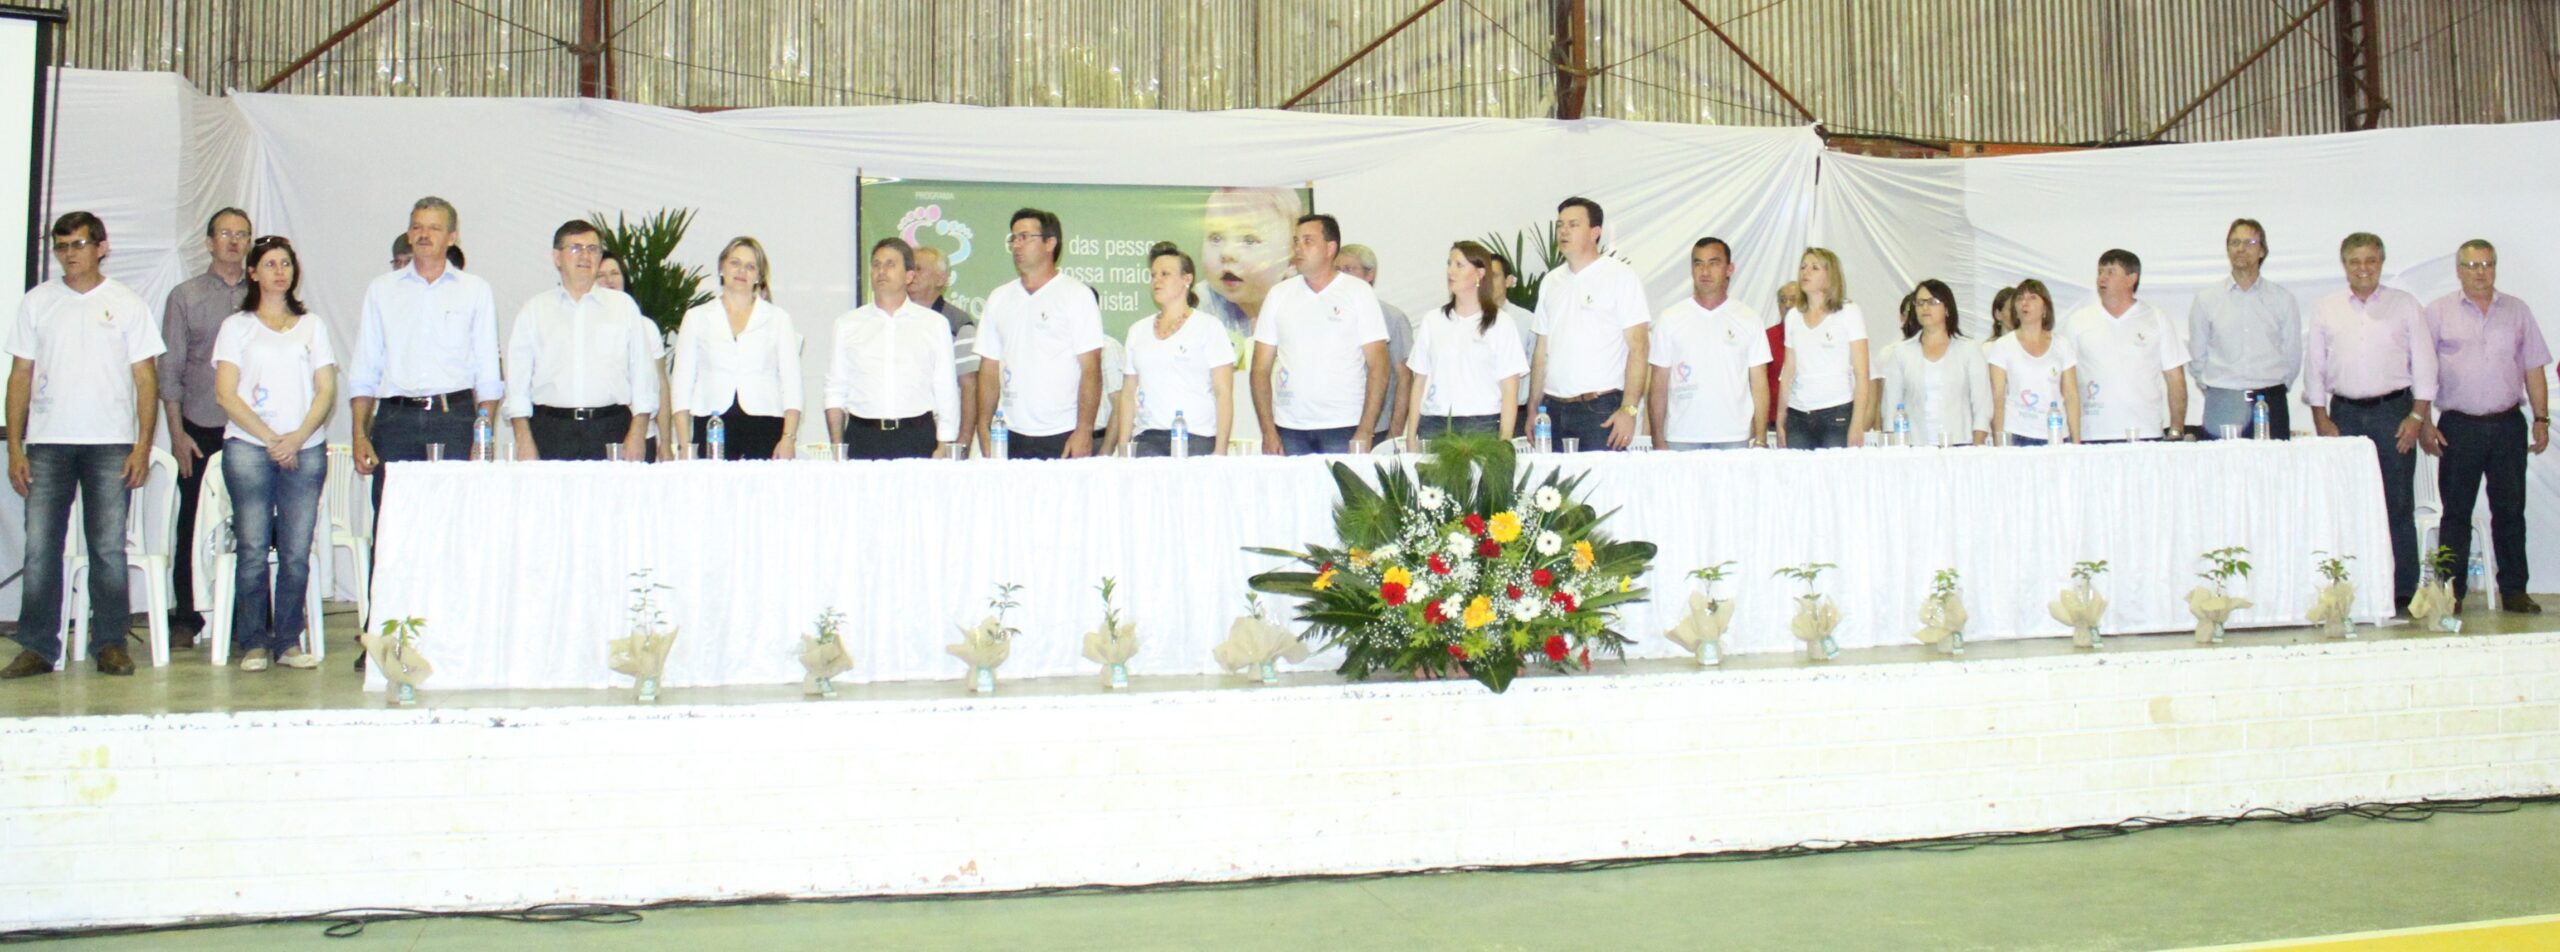 Autoridades presentes durante lançamento do Programa Primeiros Passos, em Saudades